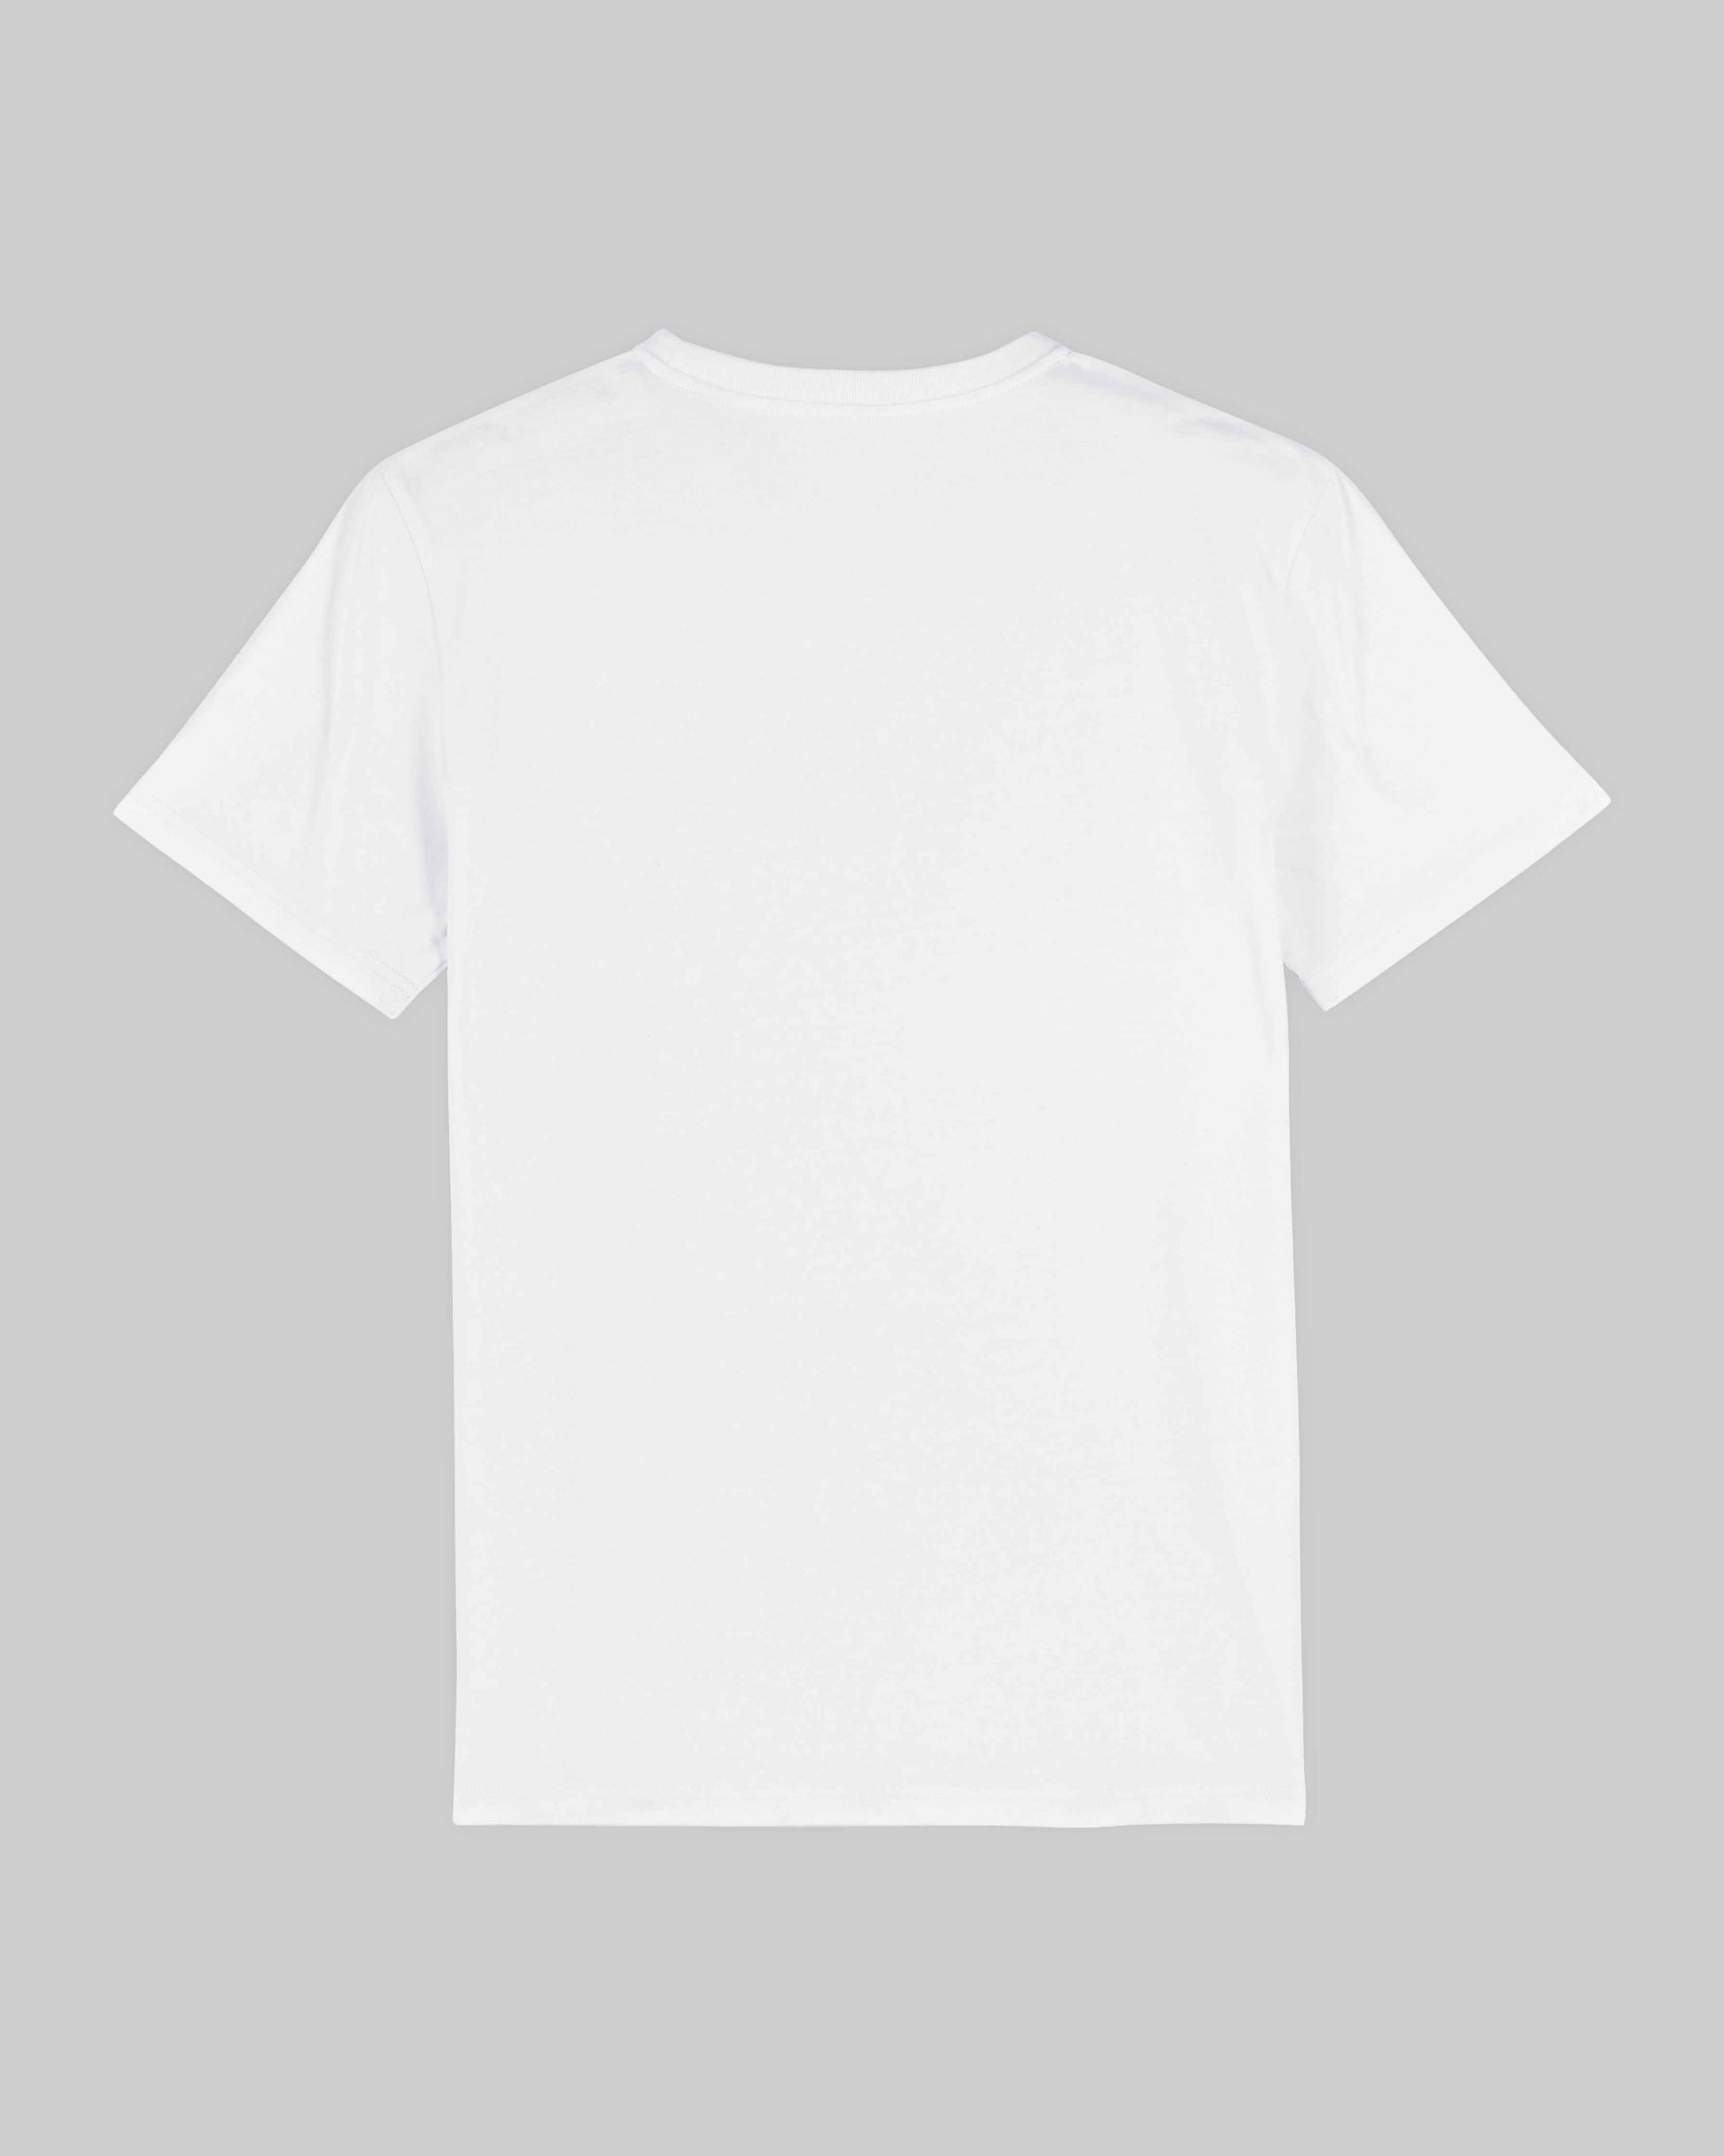 EINHORST® unisex Organic Shirt in Weiß mit dem Motiv "proud Regenbogen" in der Kombination bunter Regenbogen mit schwarzer Schrift, Bild von Shirt von hinten